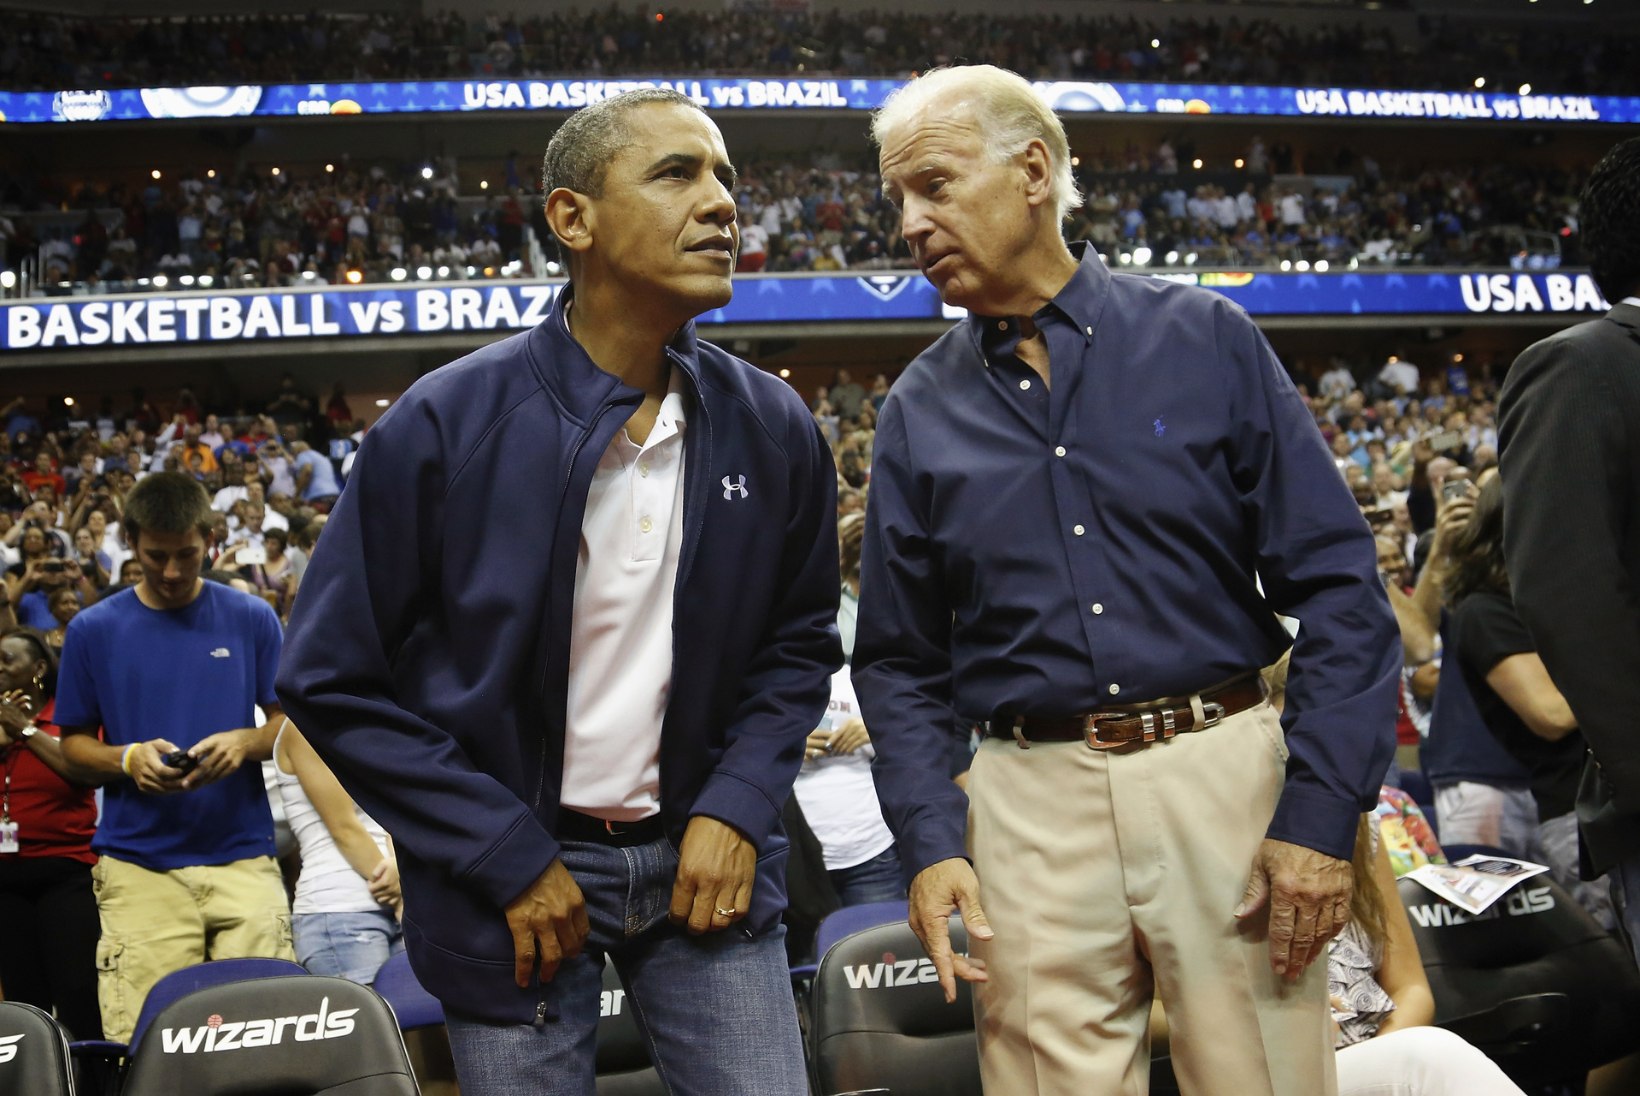 Joe Bideni traagiline armastus röövis Ameerika Ühendriikidelt silmapaistva sportlase